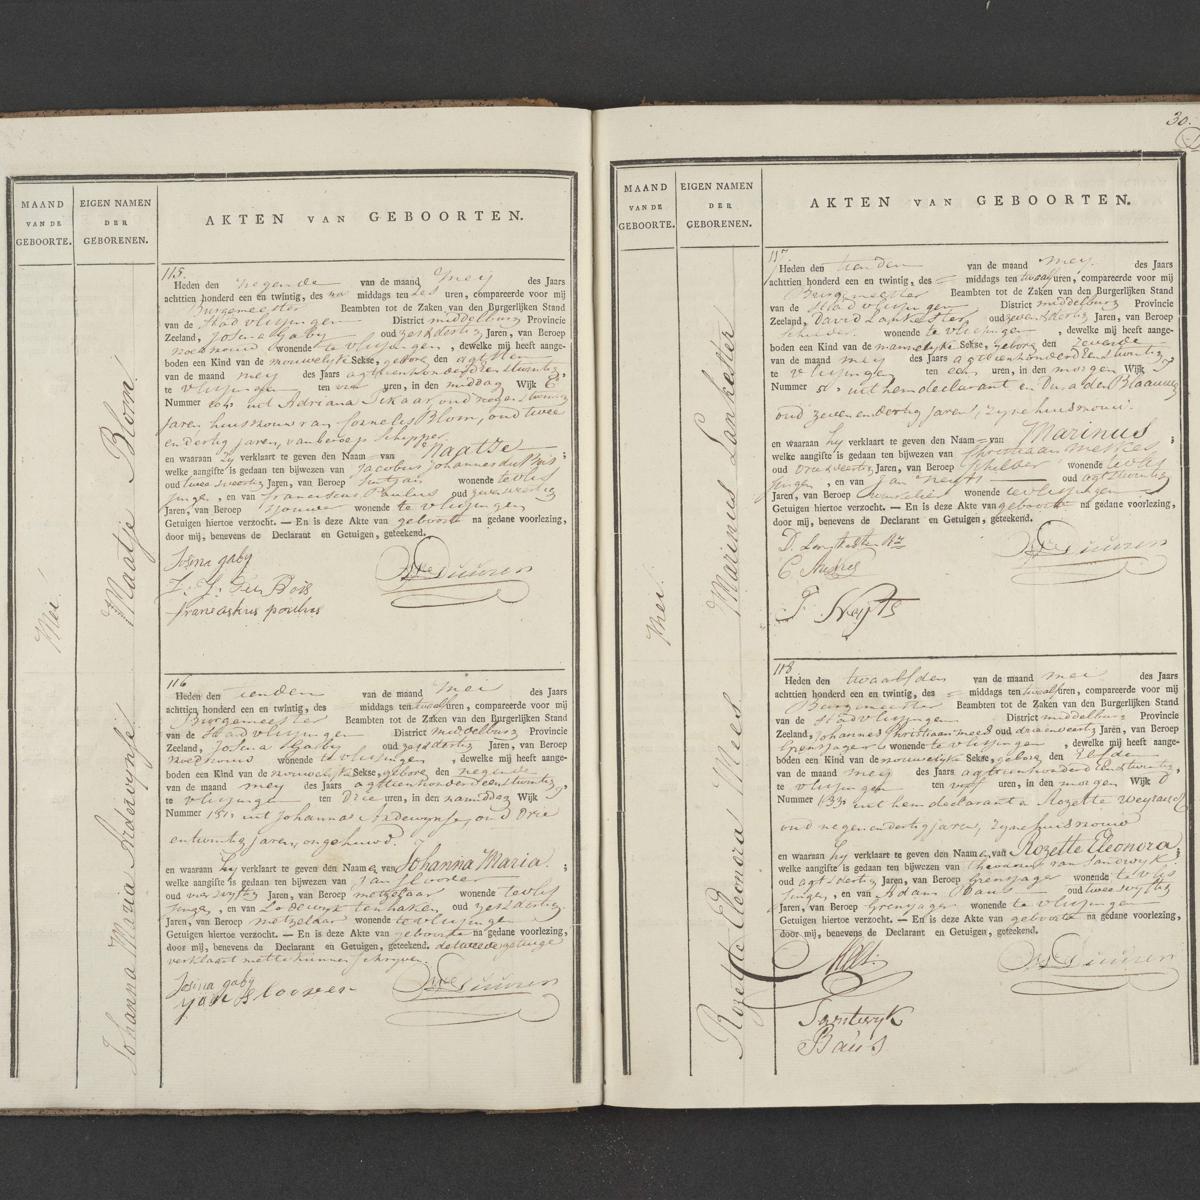 Civil registry of births, Vlissingen, 1821, records 115-118